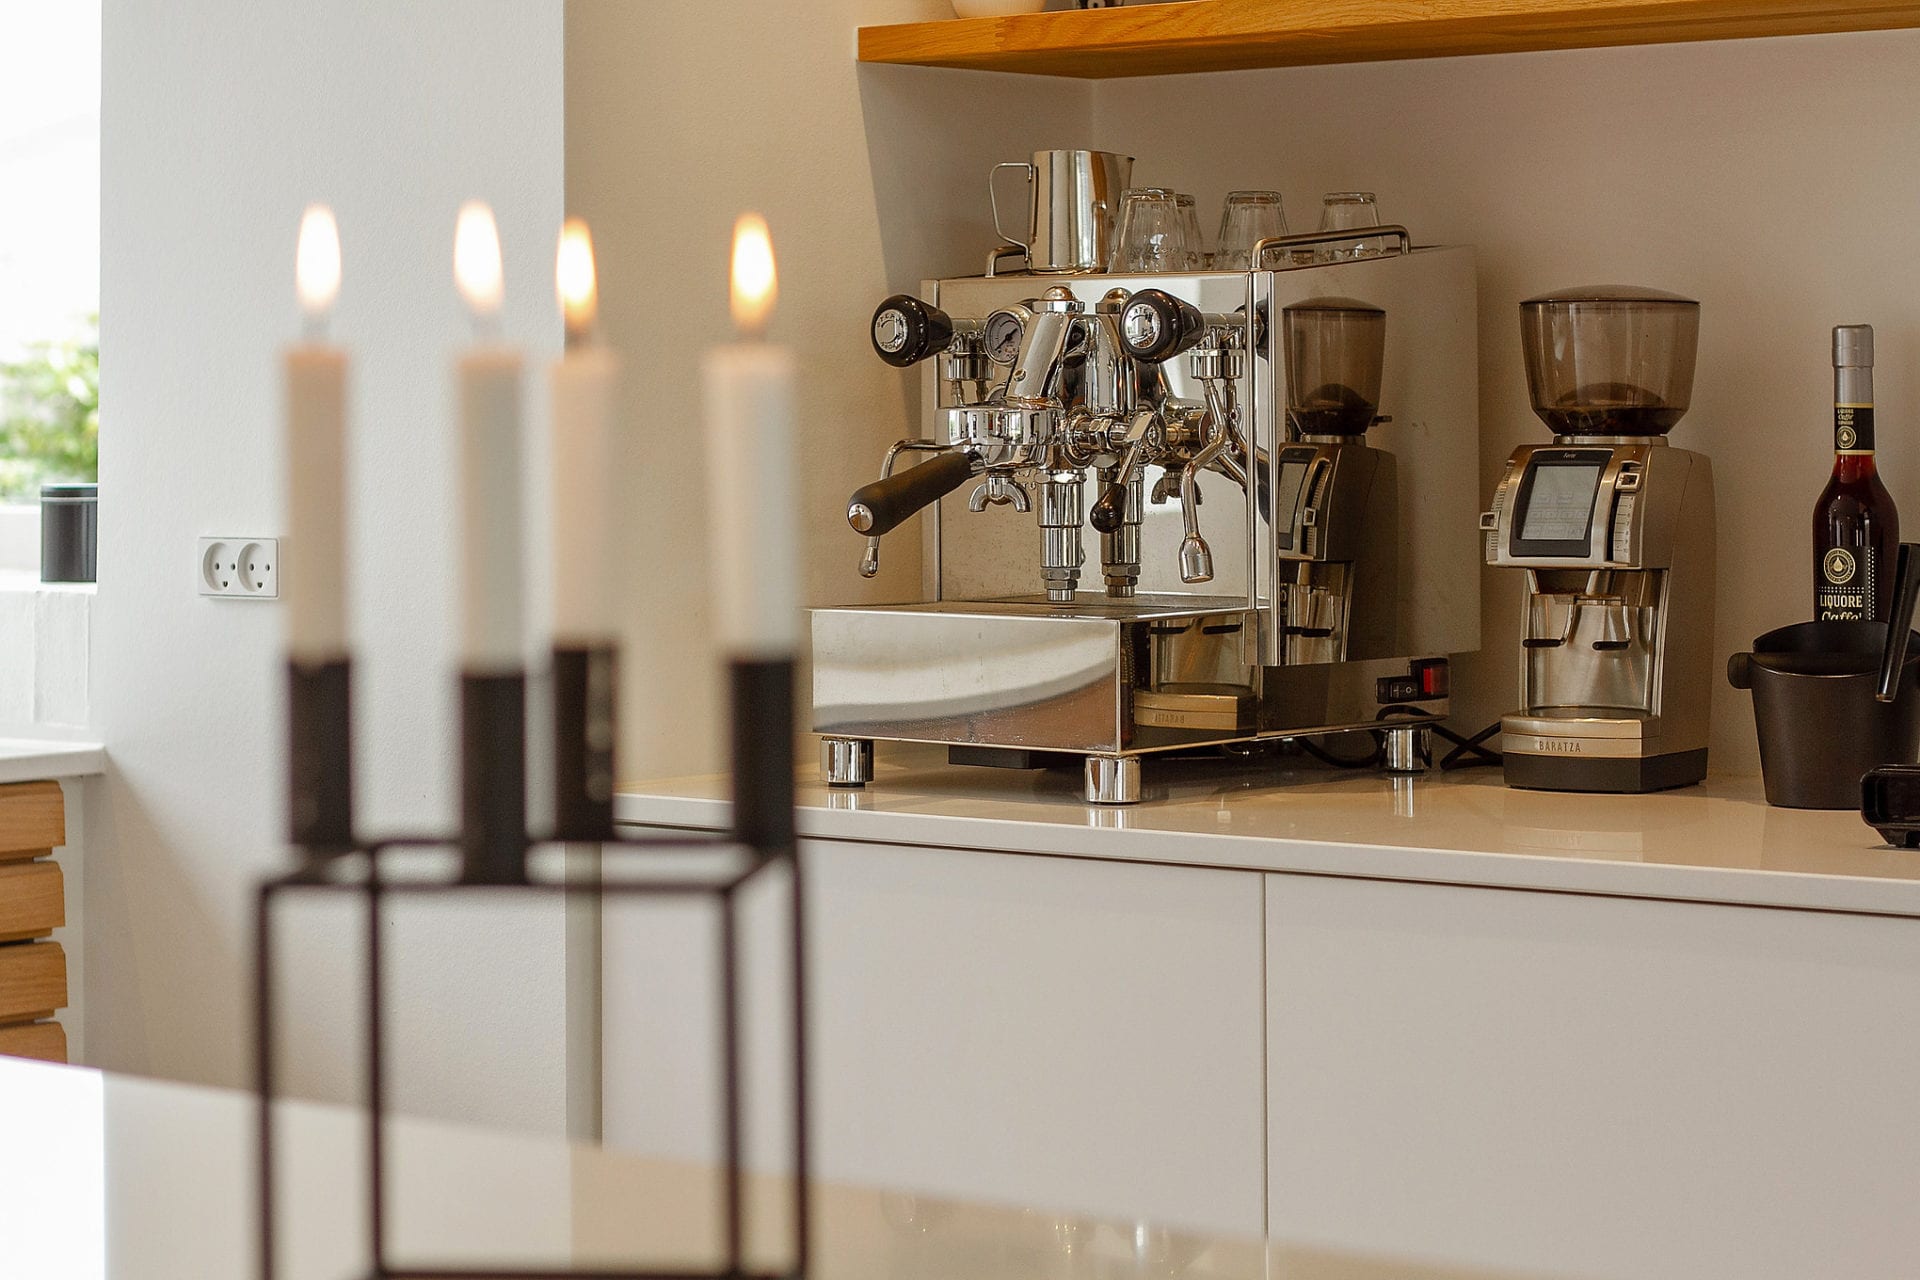 Helle og Lars bygger Arkitec - kaffemaskine